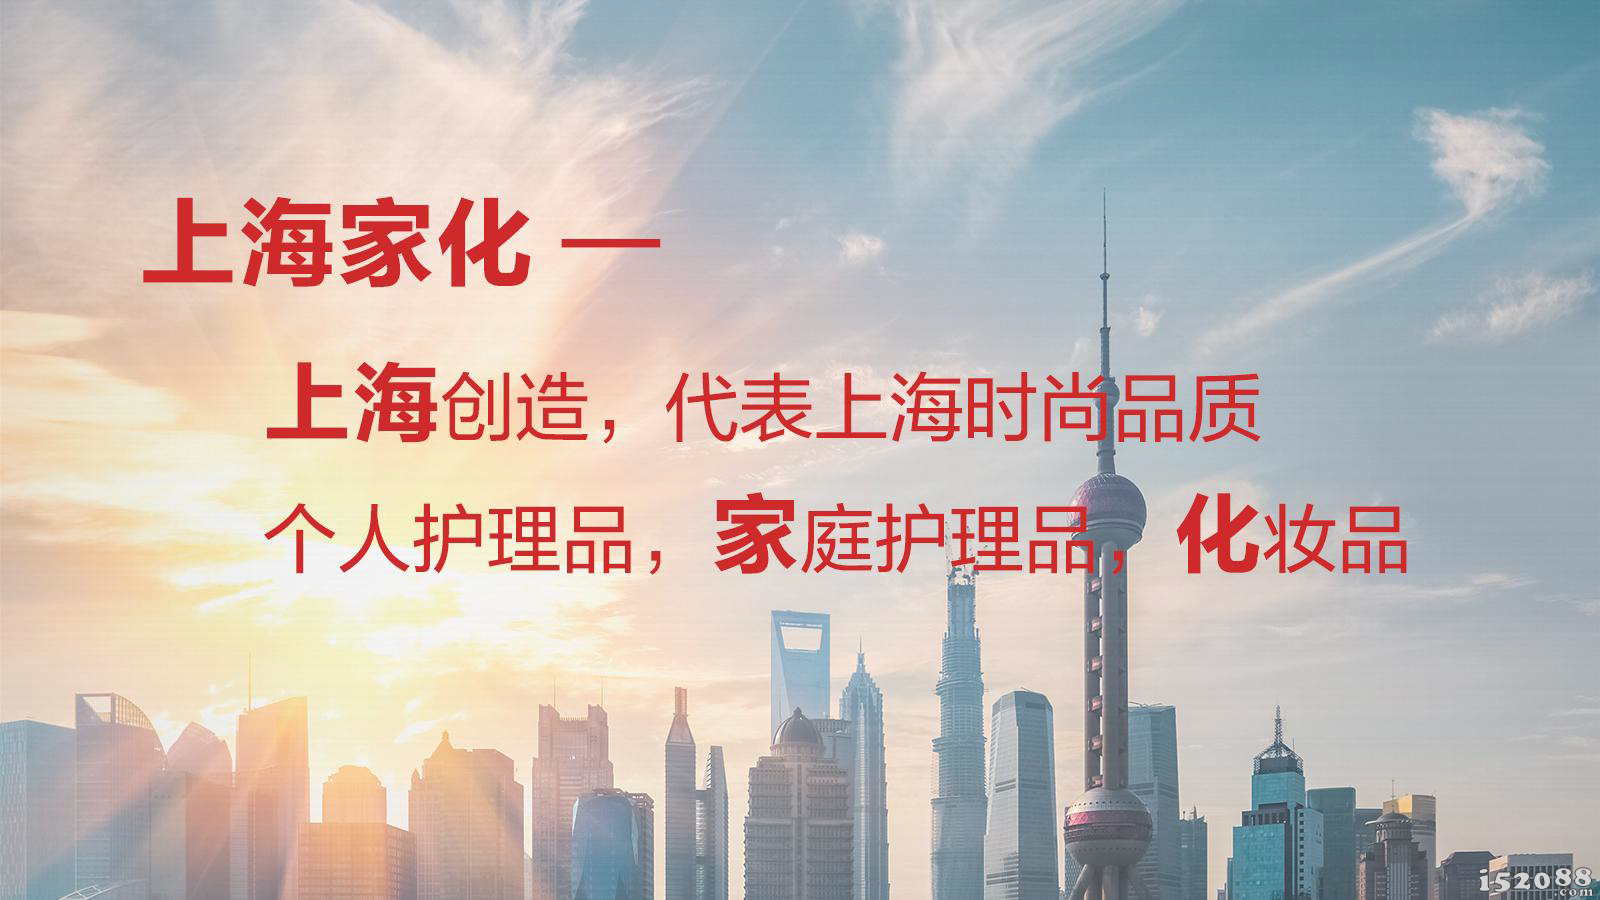 上海家化董监事会成功换届  继续稳健推进公司既定战略发展